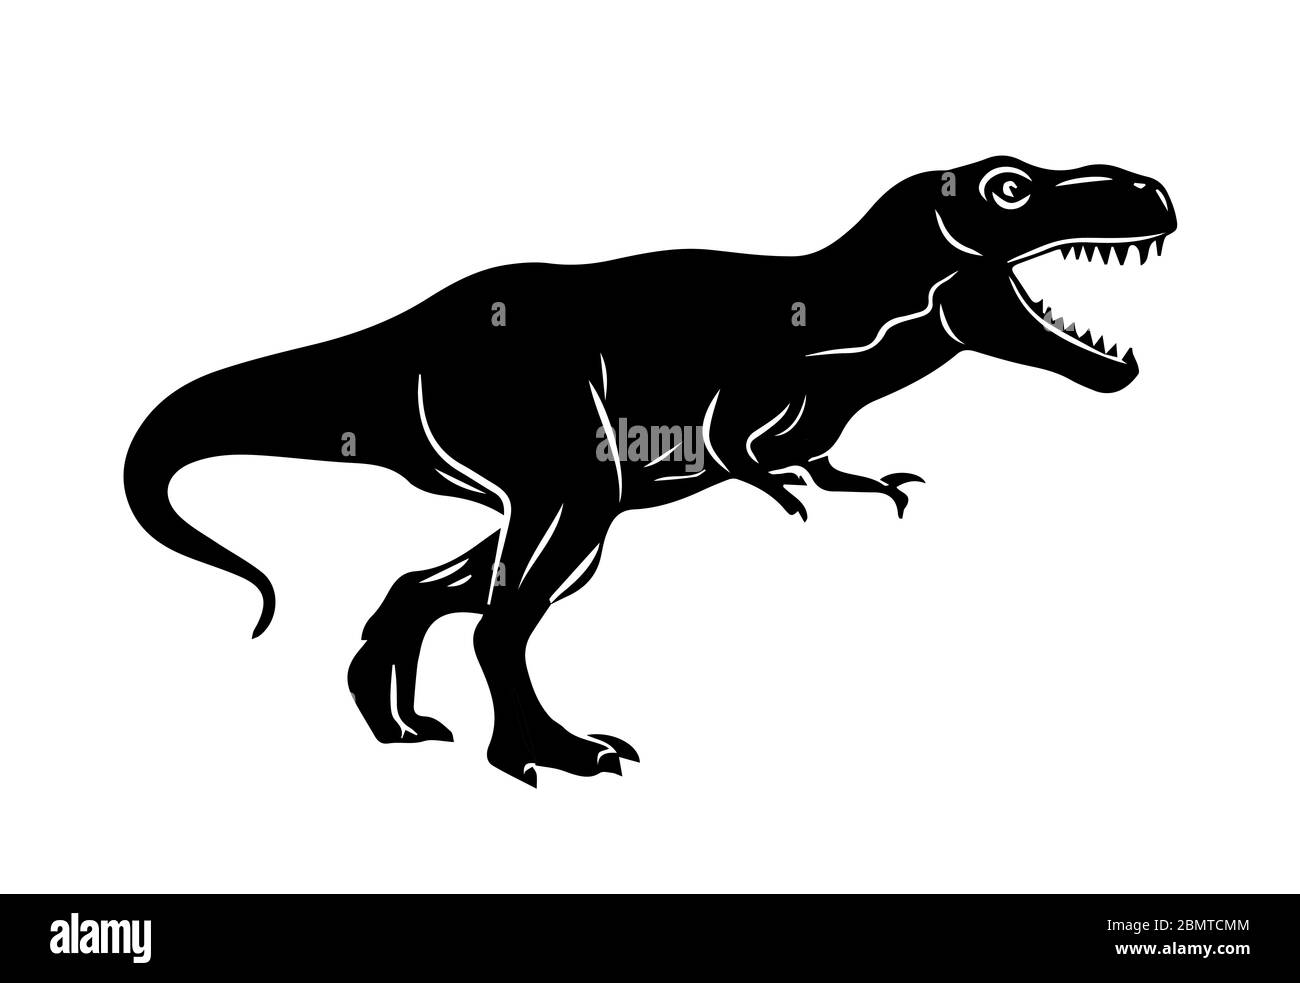 Silueta de dinosaurio rex Imágenes de stock en blanco y negro - Alamy